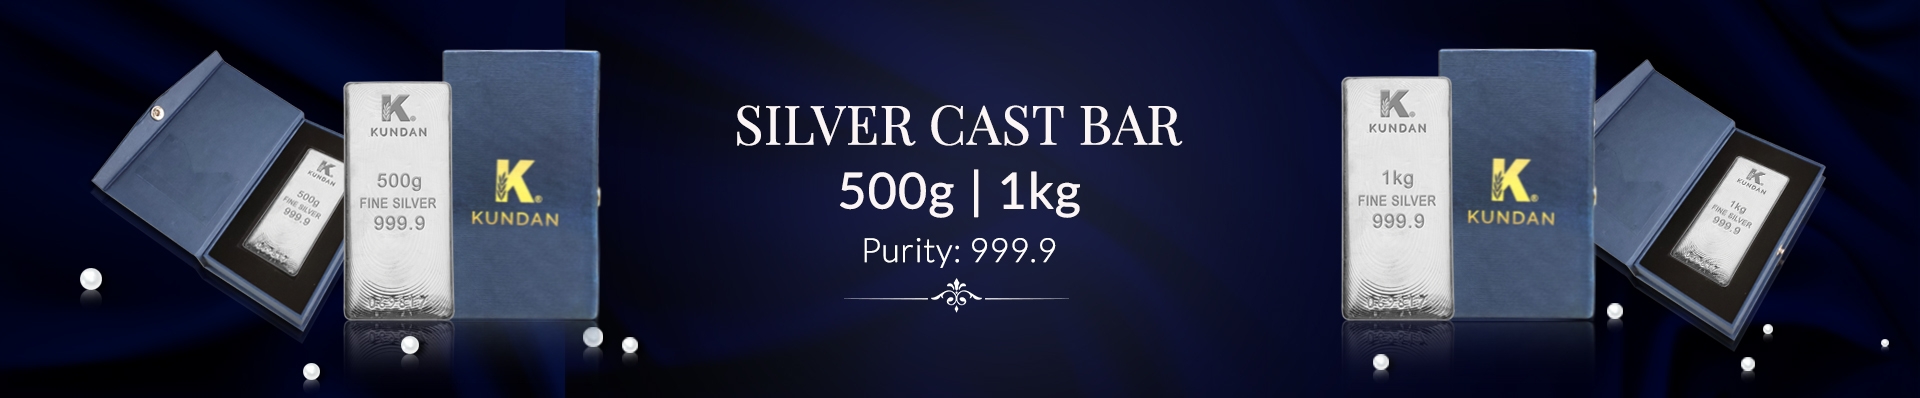 Silver Cast Bar